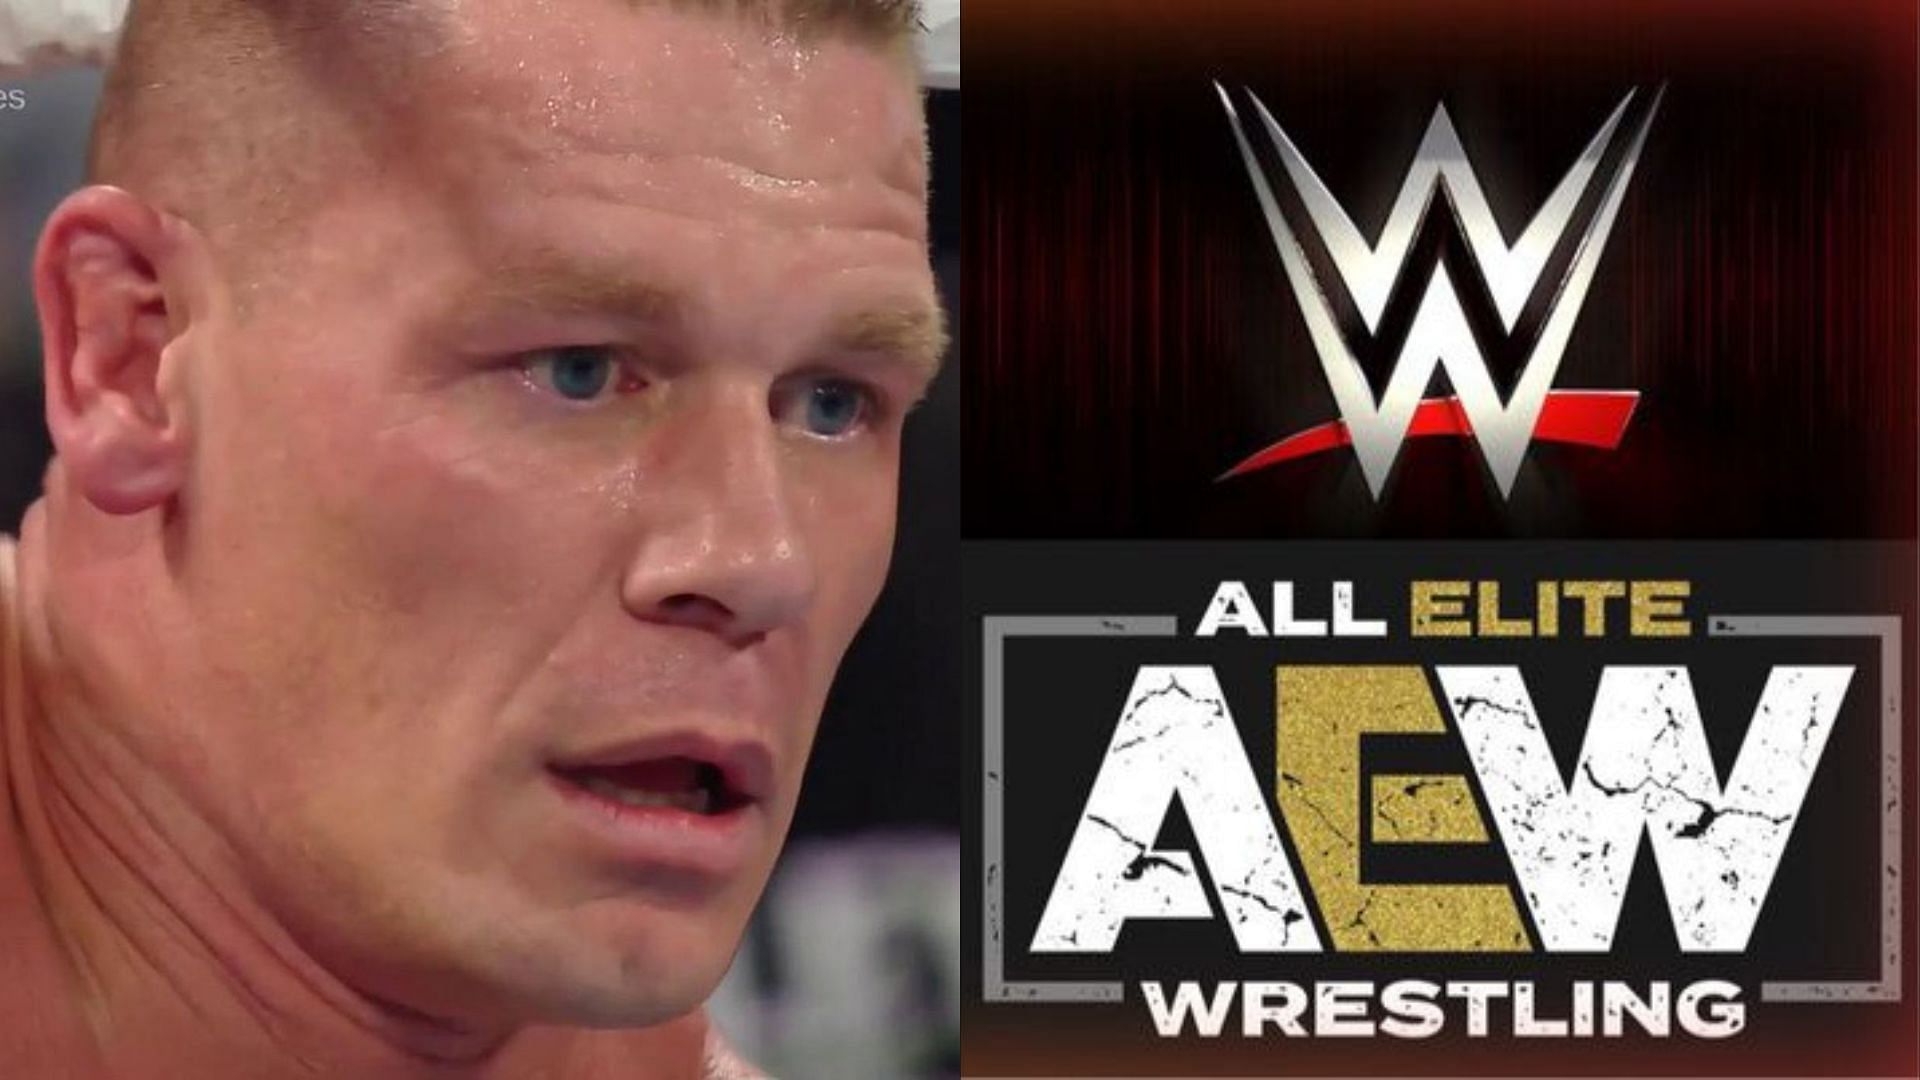 John Cena (left), AEW, and WWE logos (right)